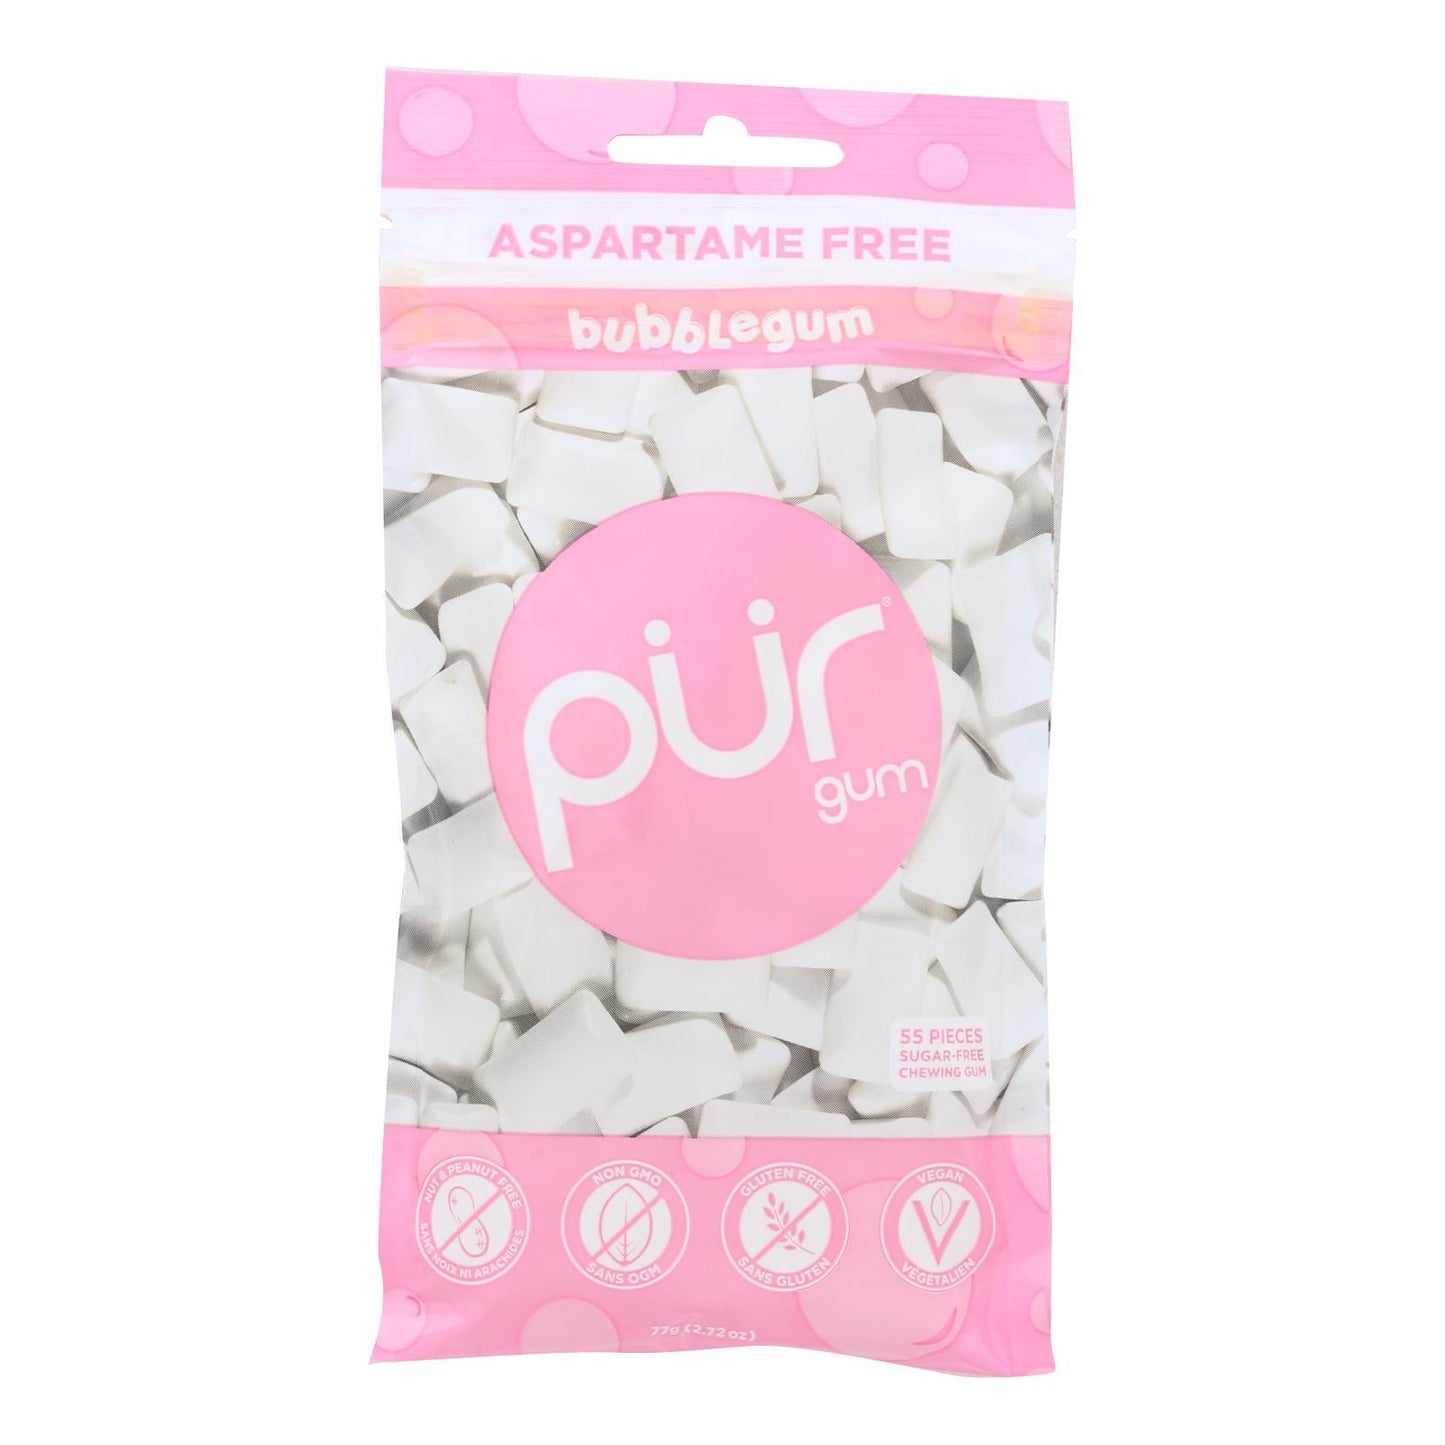 Pur Gum Gum - Bubble - Case Of 12 - 77 Gm